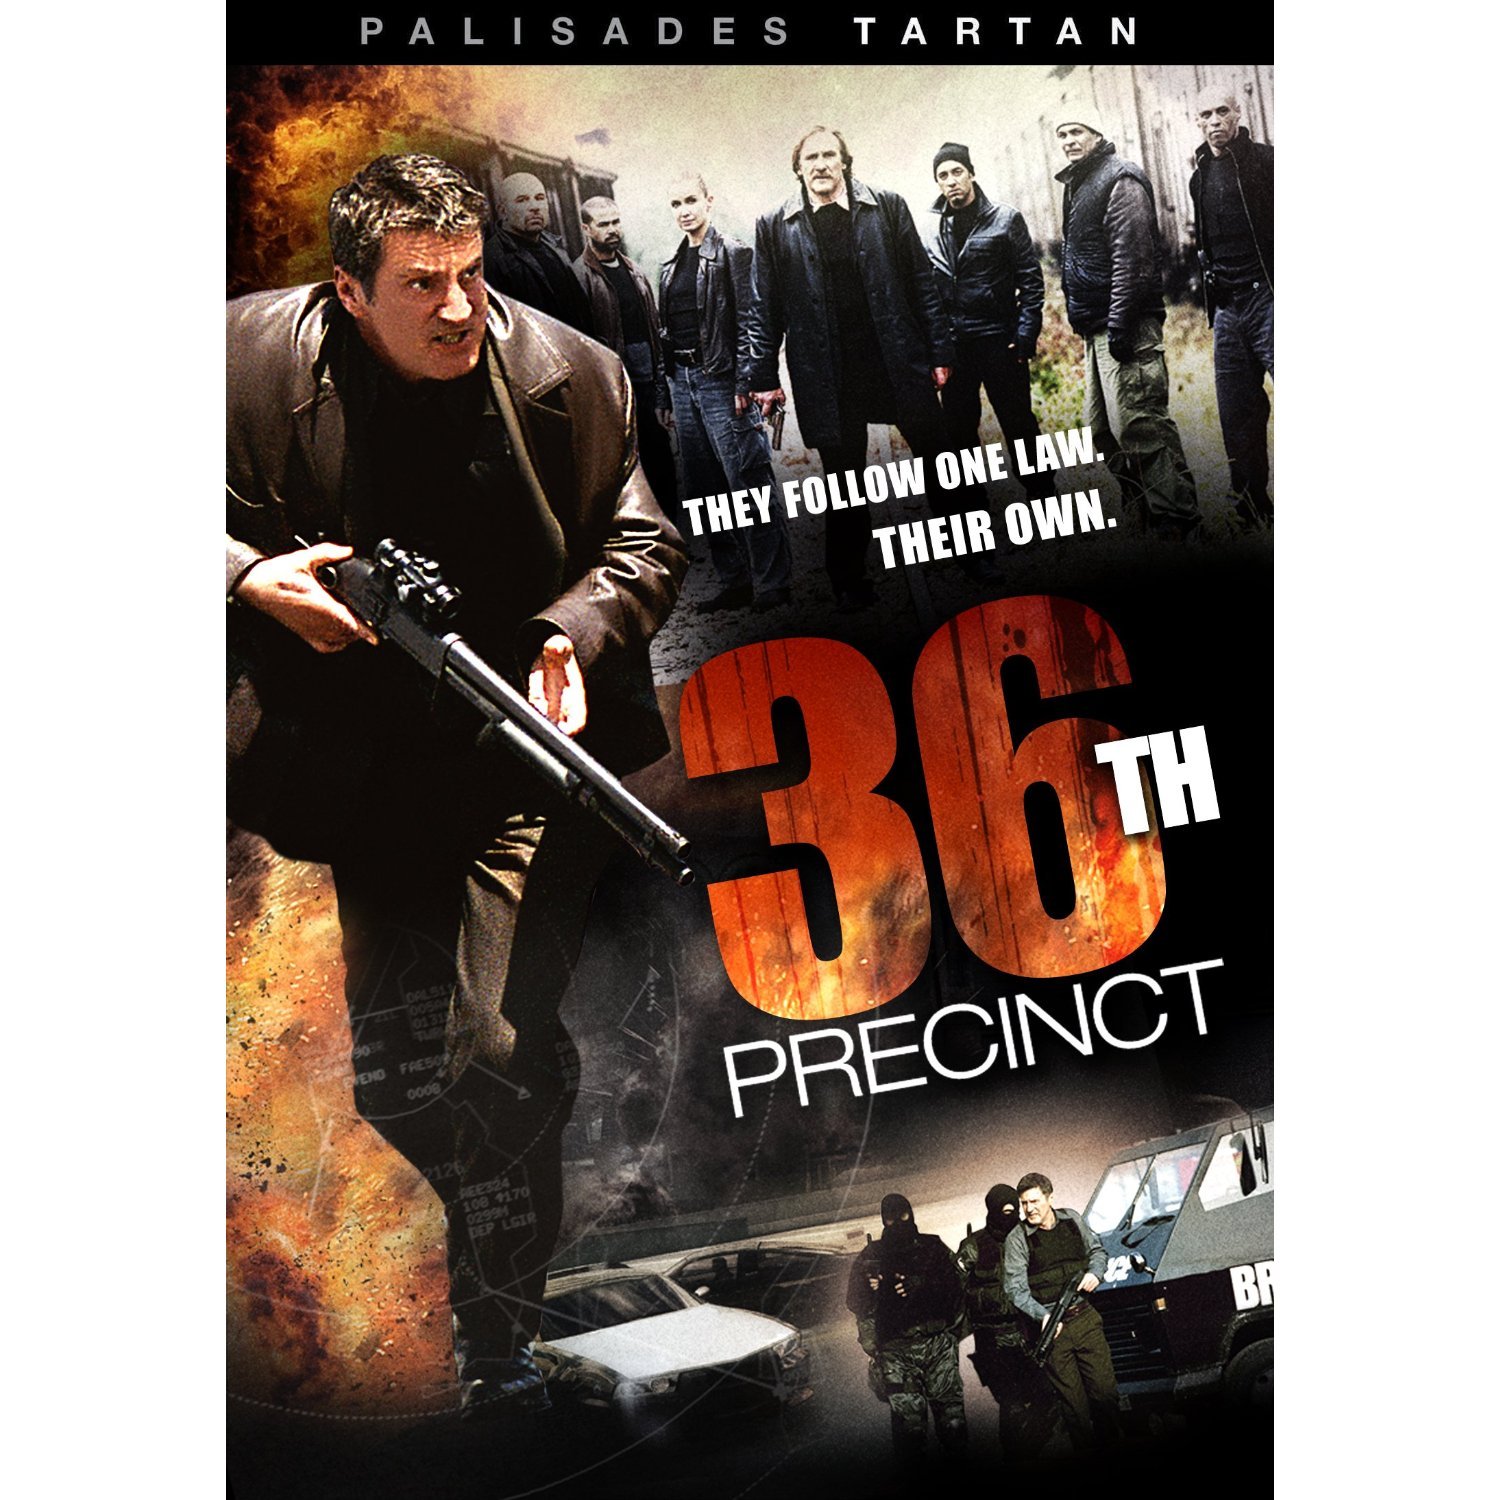 36th Precinct #1